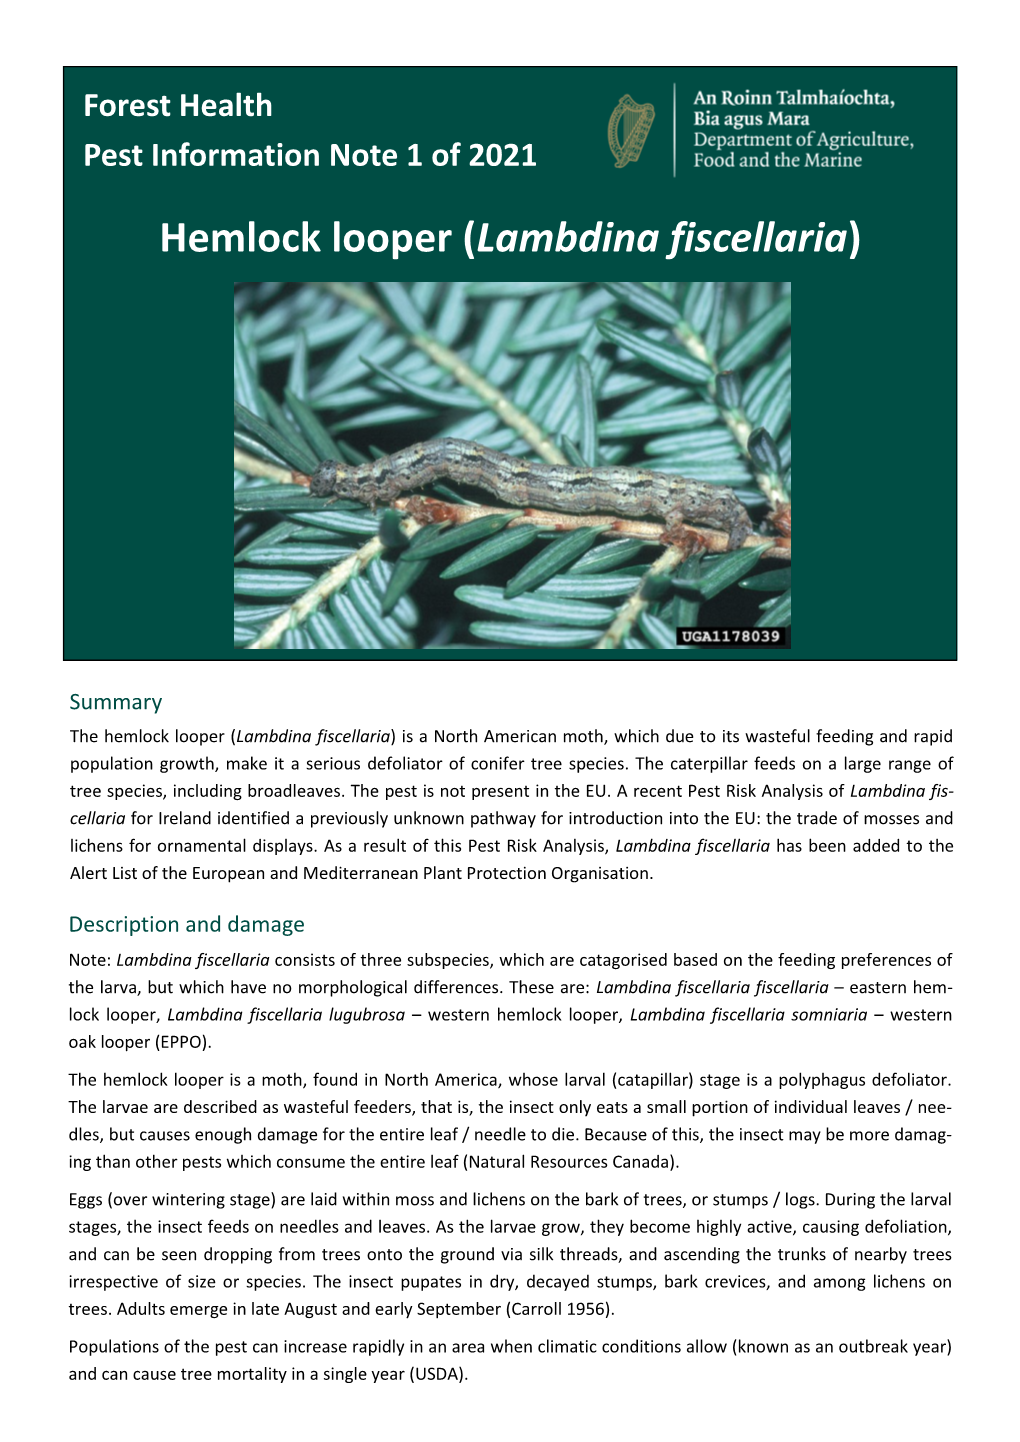 Hemlock Looper (Lambdina Fiscellaria)